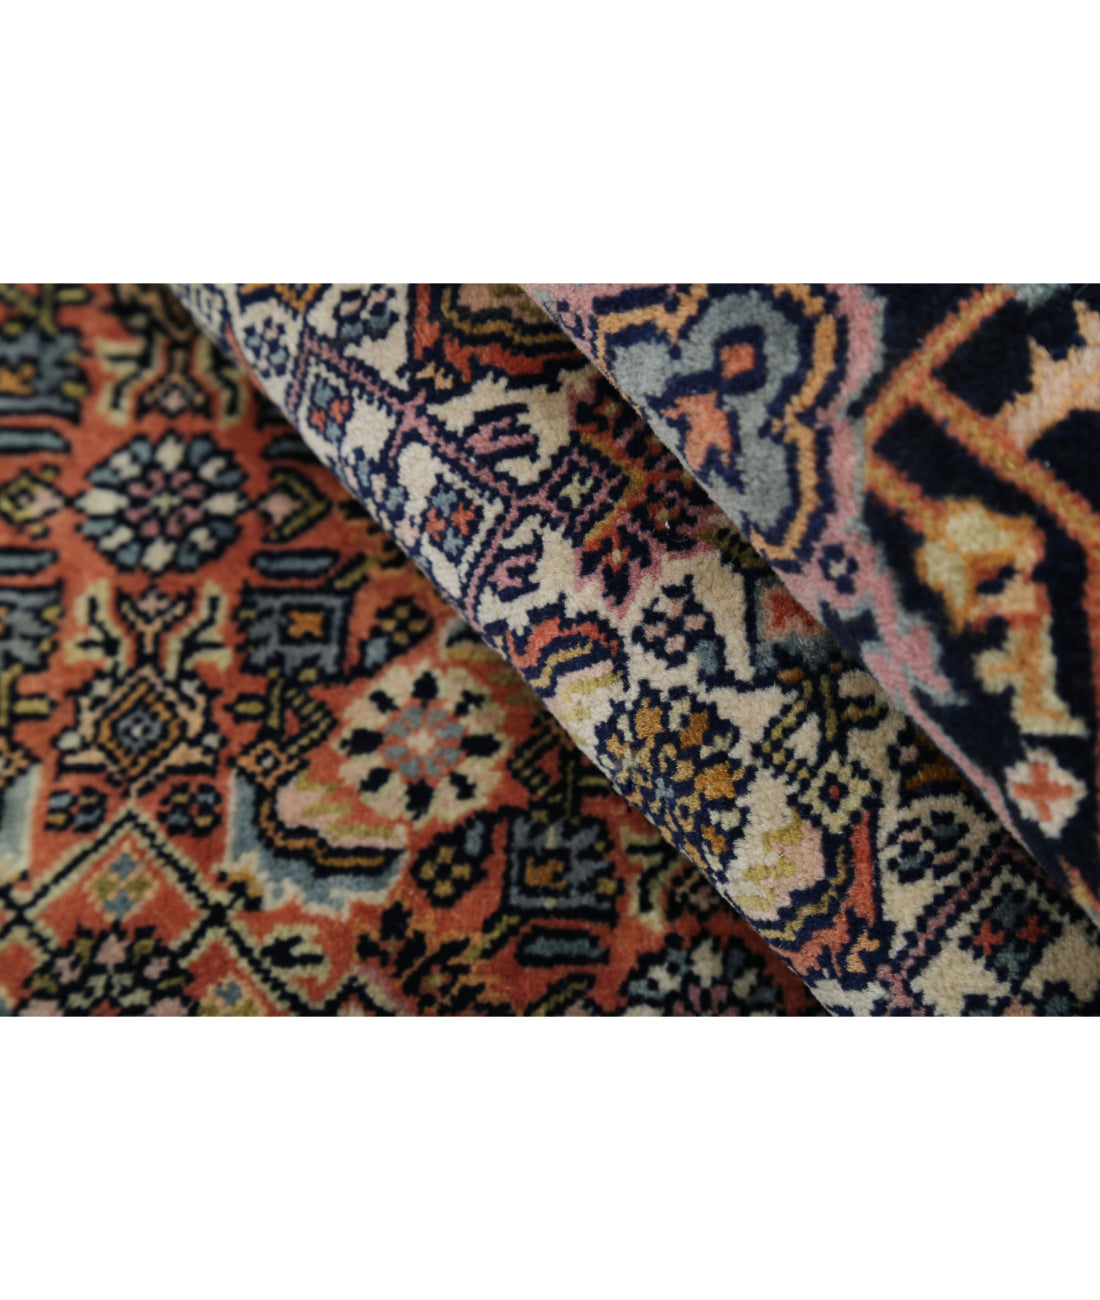 Hand Knotted Persian Bijar Wool Rug - 6'7'' x 9'11'' 6'7'' x 9'11'' (198 X 298) / Rust / Blue